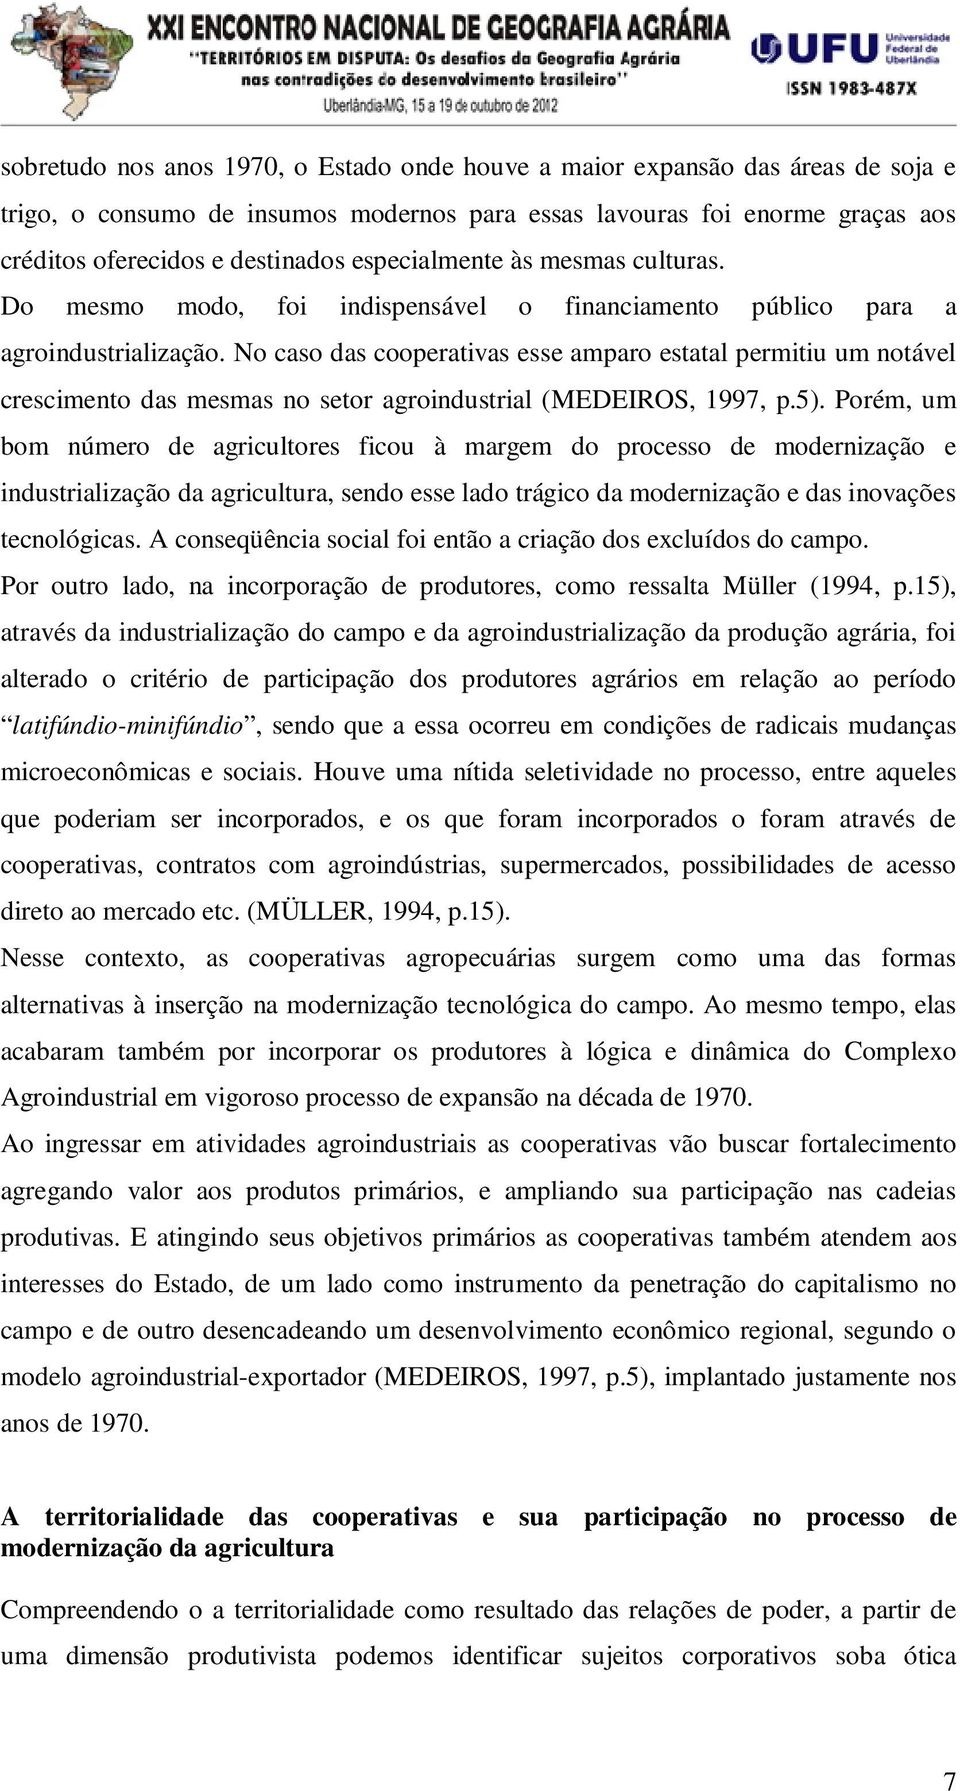 No caso das cooperativas esse amparo estatal permitiu um notável crescimento das mesmas no setor agroindustrial (MEDEIROS, 1997, p.5).